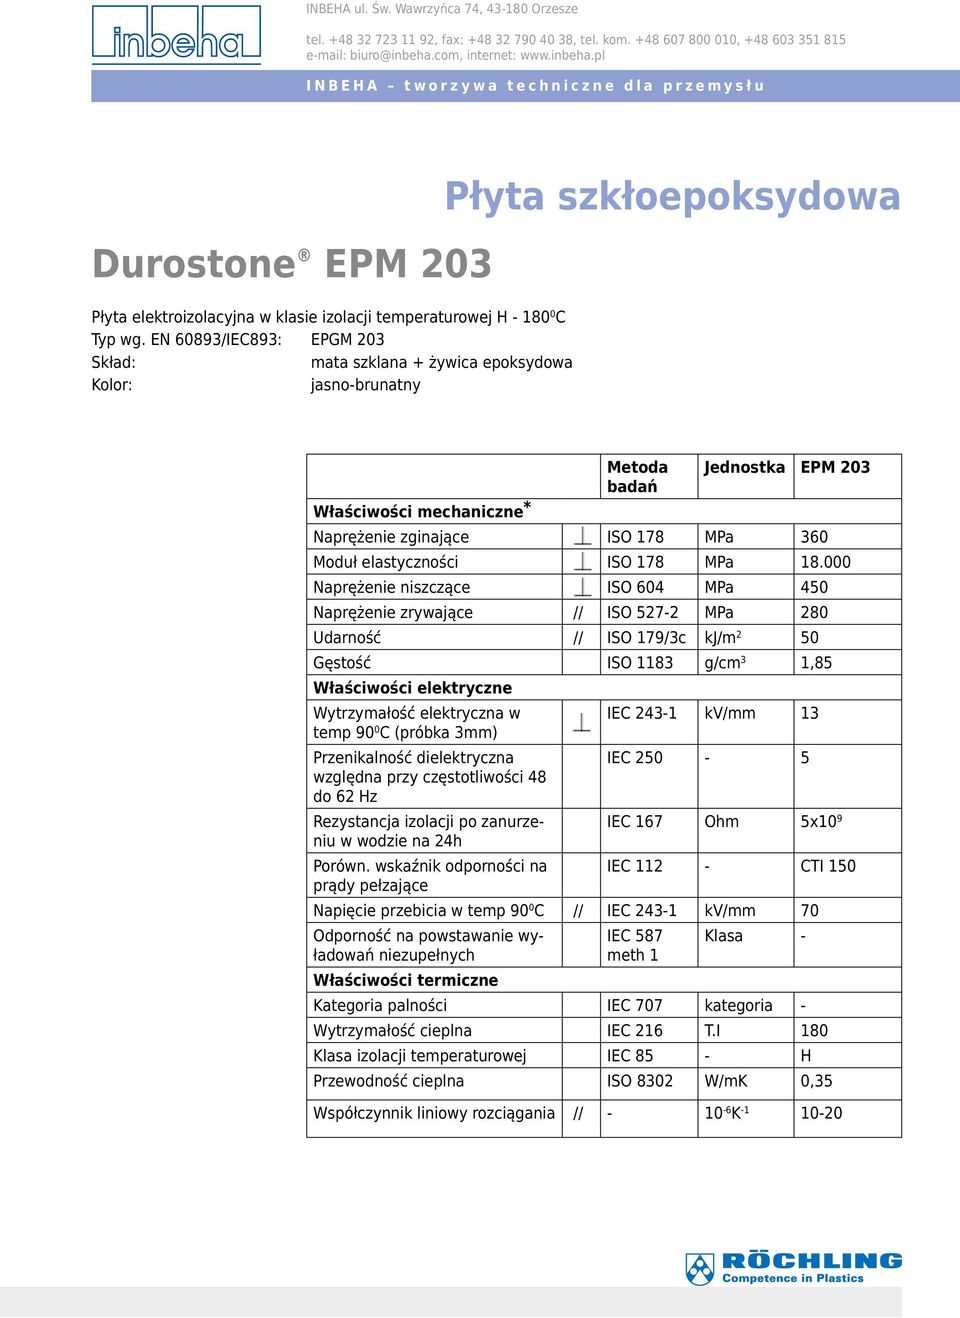 000 Naprężenie niszczące ISO 604 MPa 450 Naprężenie zrywające // ISO 527-2 MPa 280 Udarność // ISO 179/3c kj/m 2 50 Gęstość ISO 1183 g/cm 3 1,85 Właściwości elektryczne Wytrzymałość elektryczna w IEC